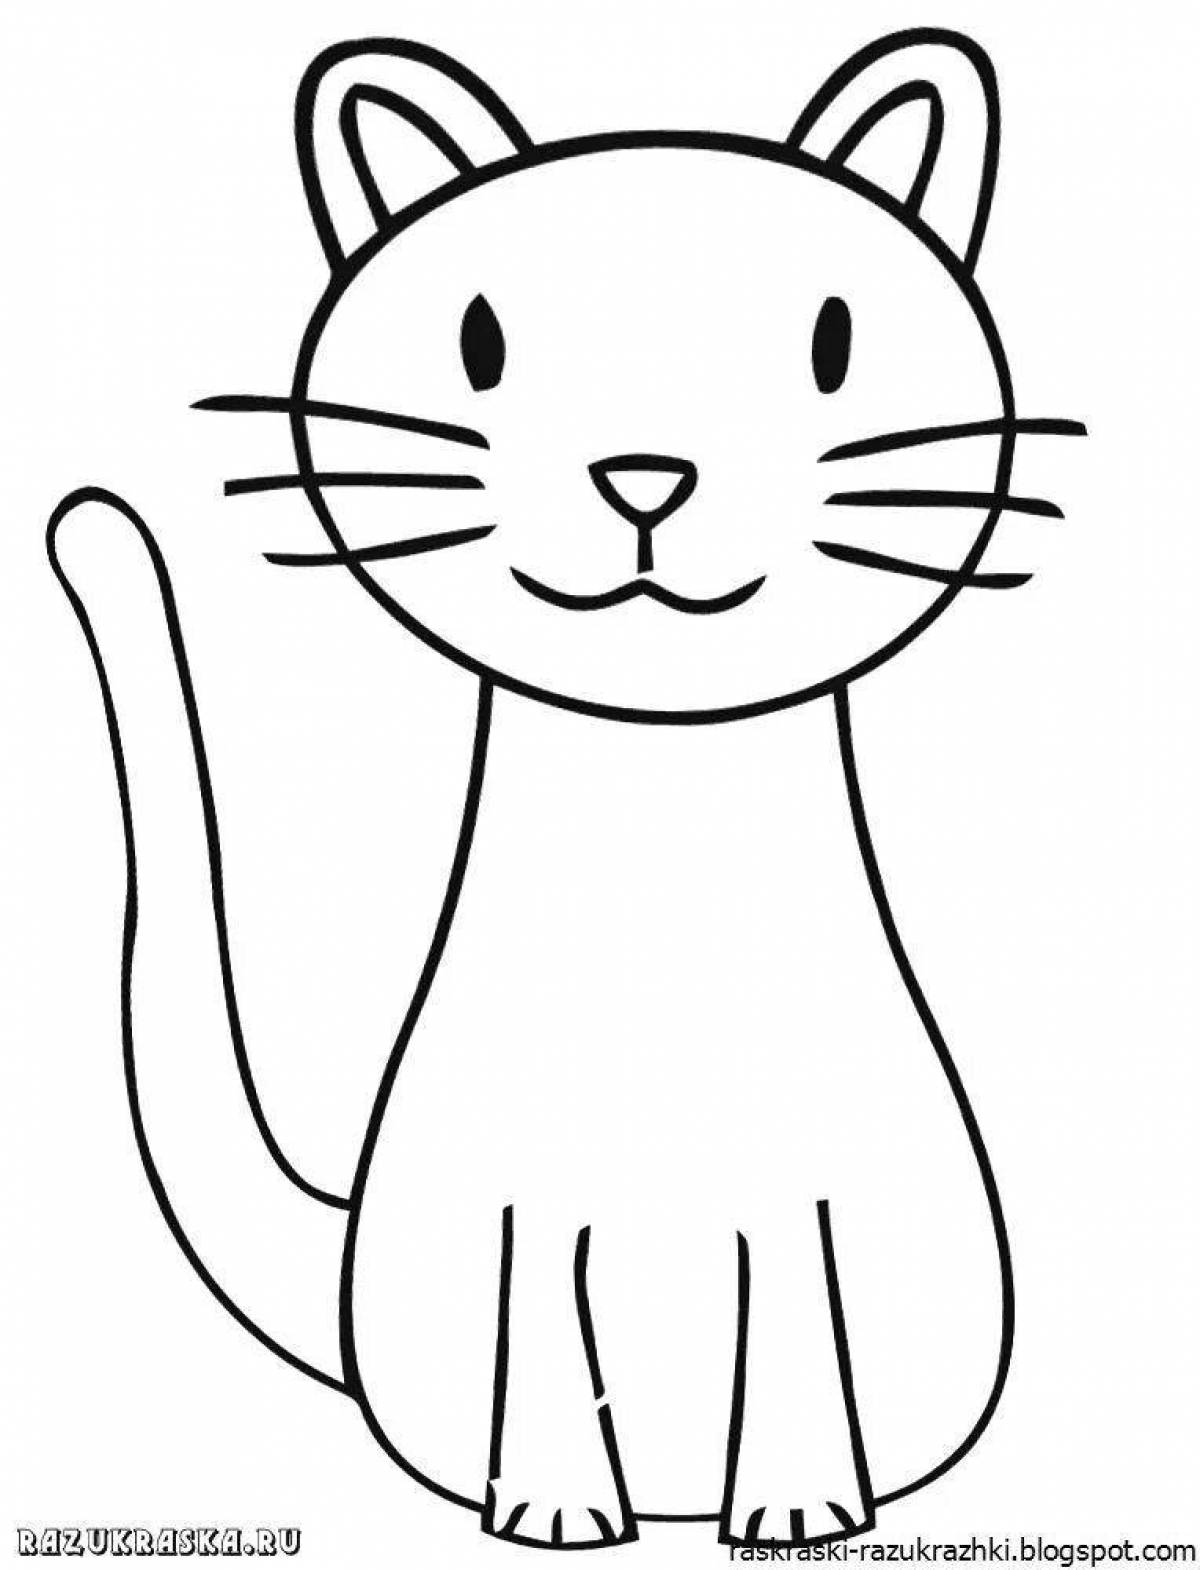 Раскраска дружелюбный котенок для детей 2-3 лет